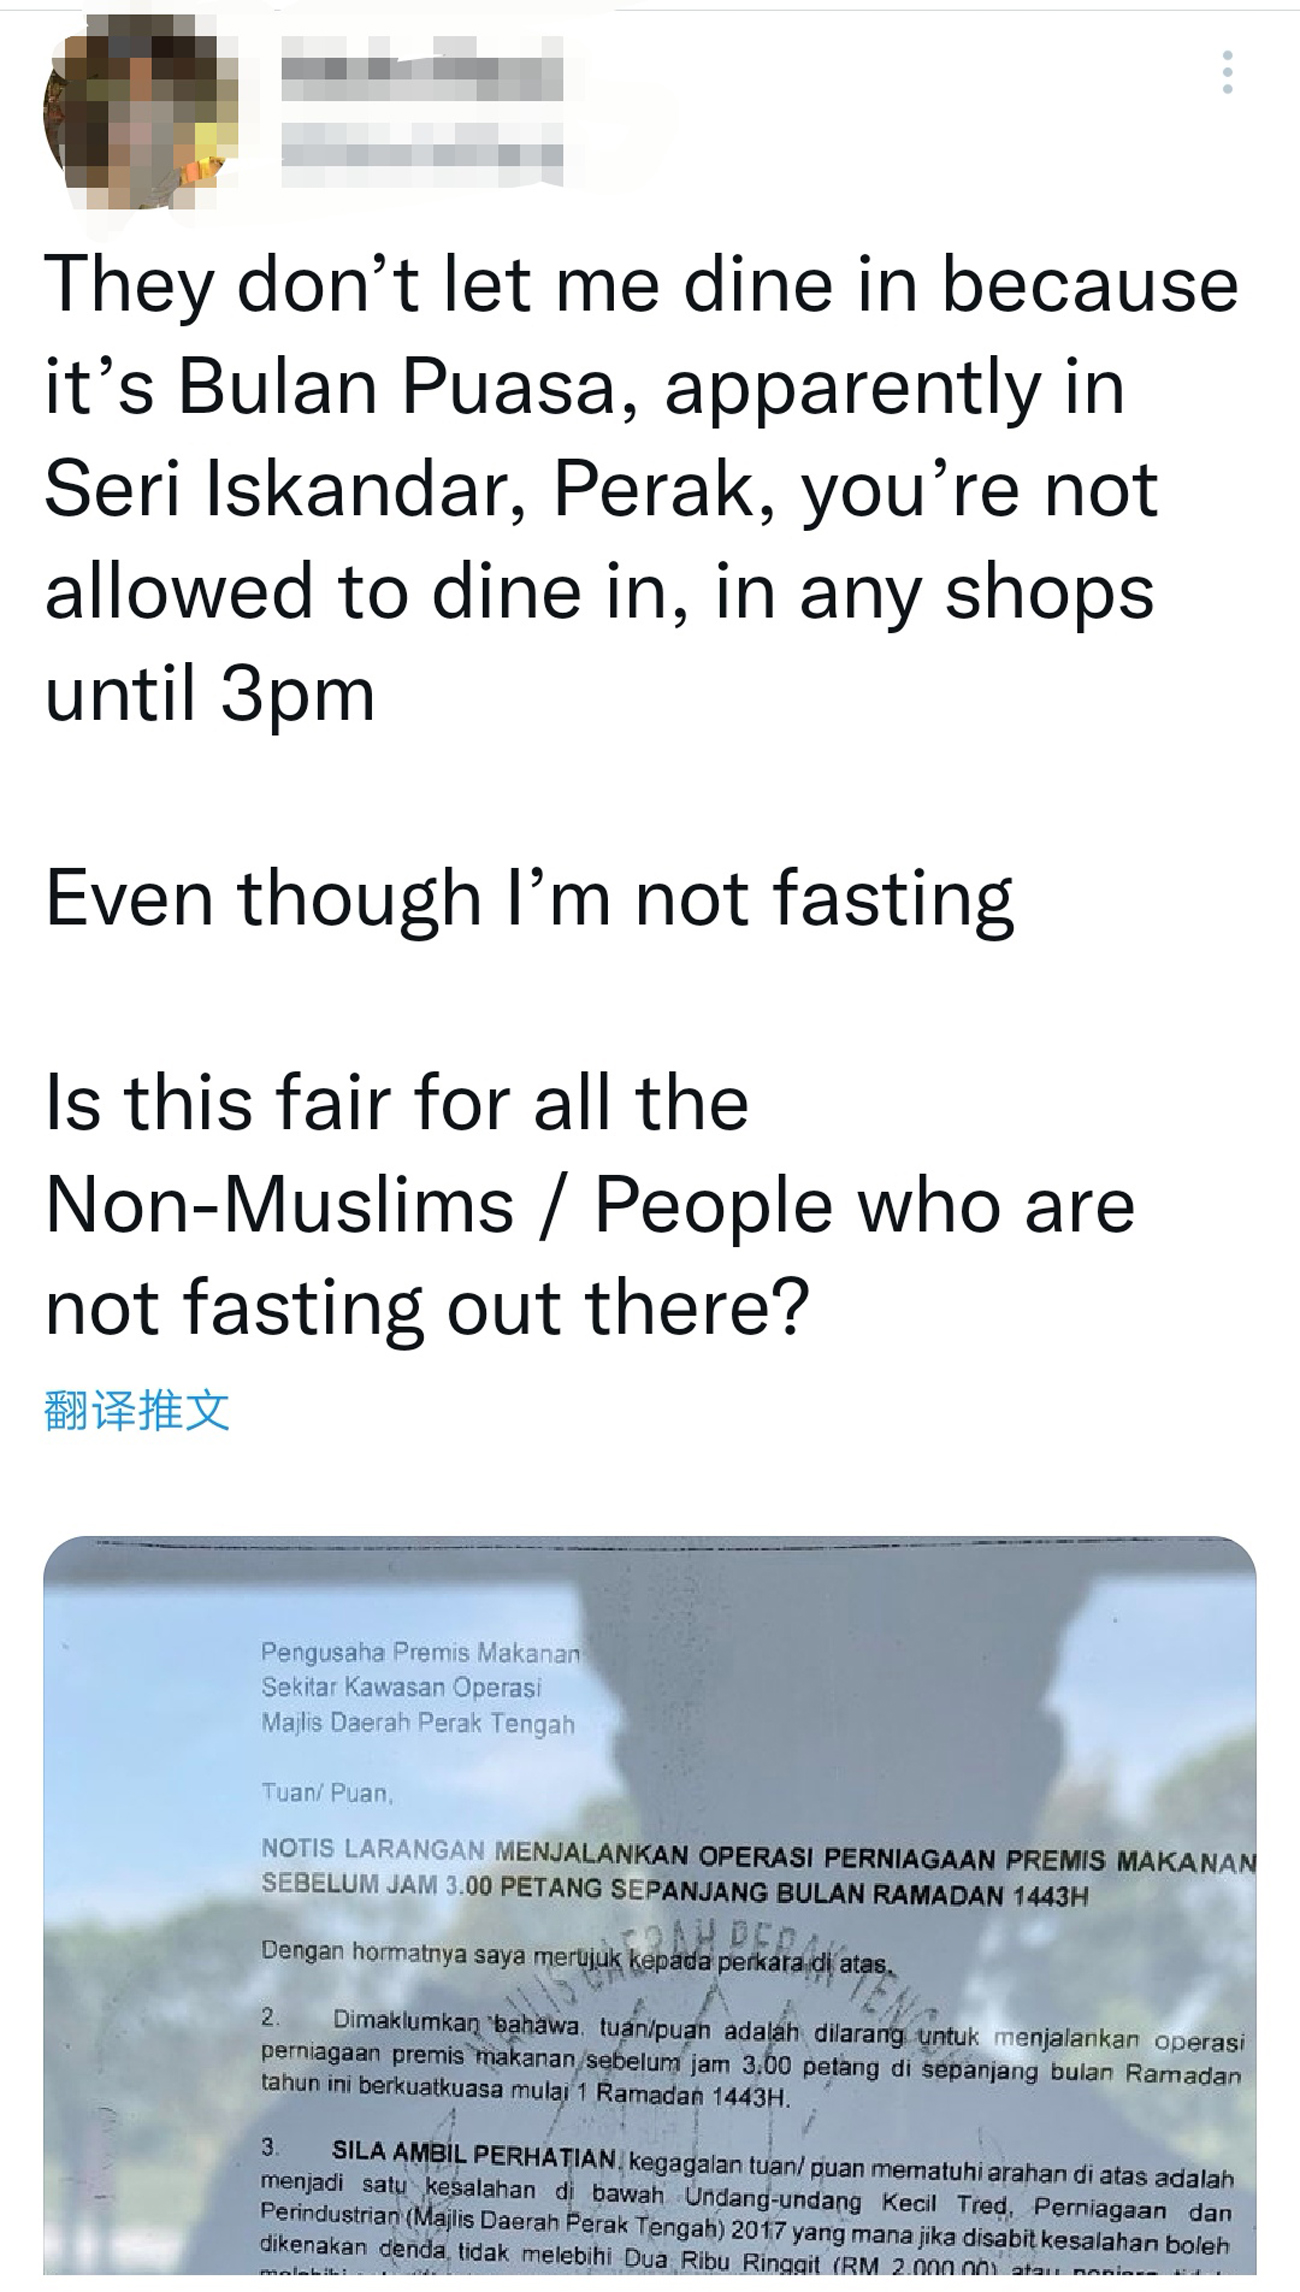 中霹雳食肆下午3时前不能营业 詹瑞峰：当地非穆斯林如常堂食